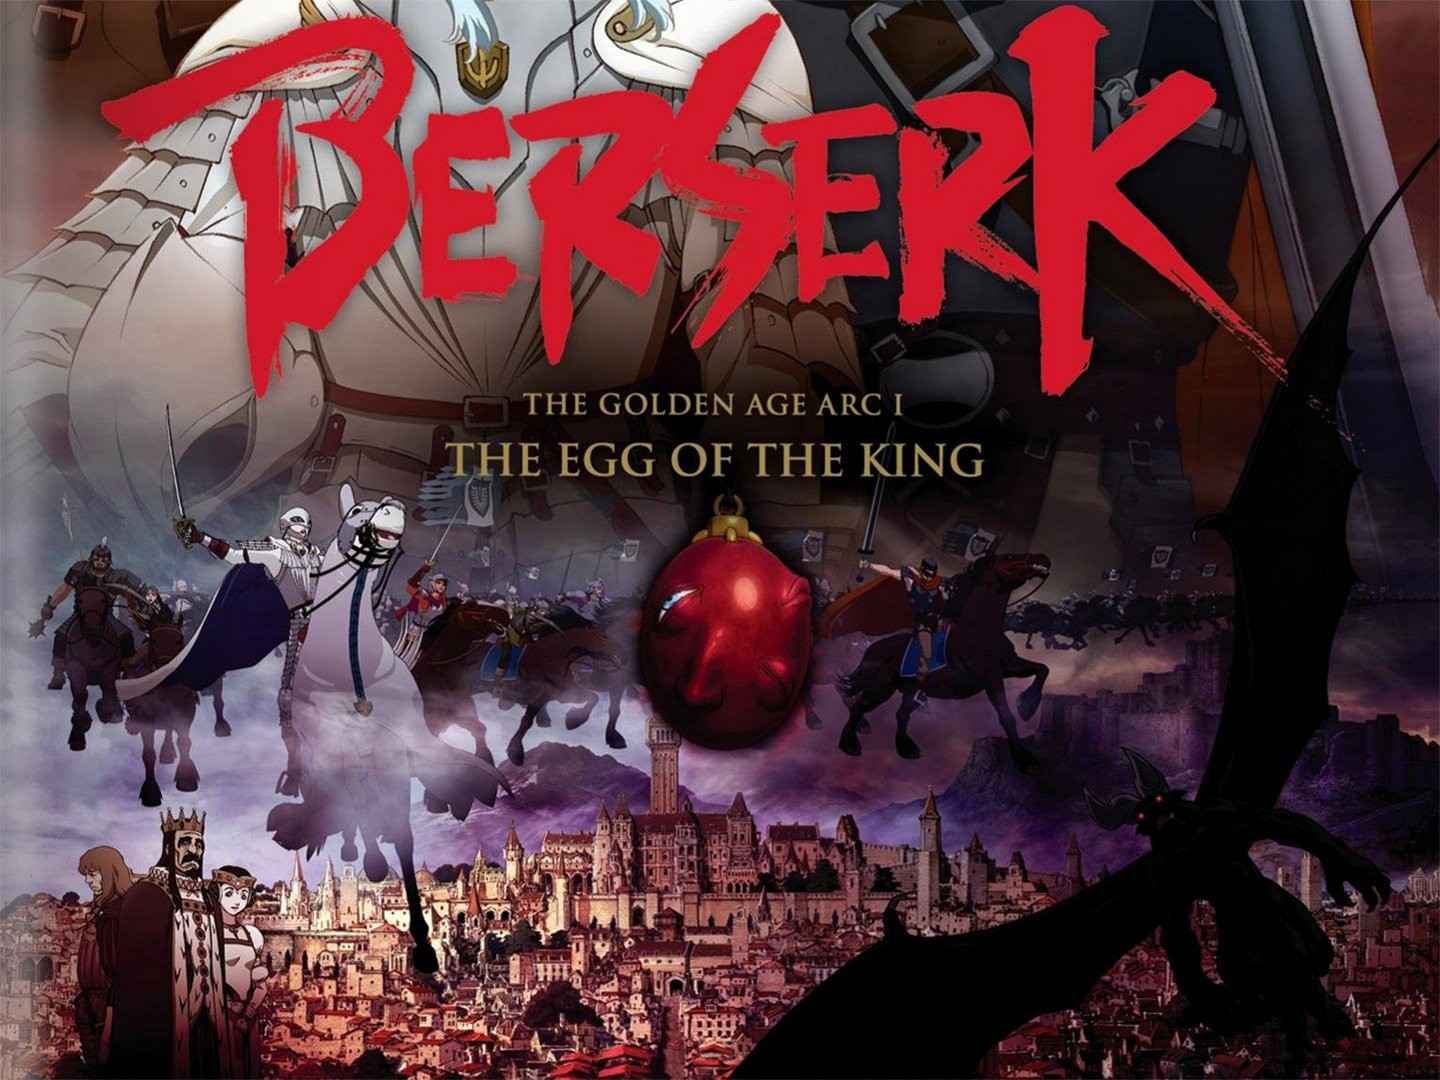 BERSERK Movie Program Booklet The Golden Age Ark 1 - The Egg of the King  Rare